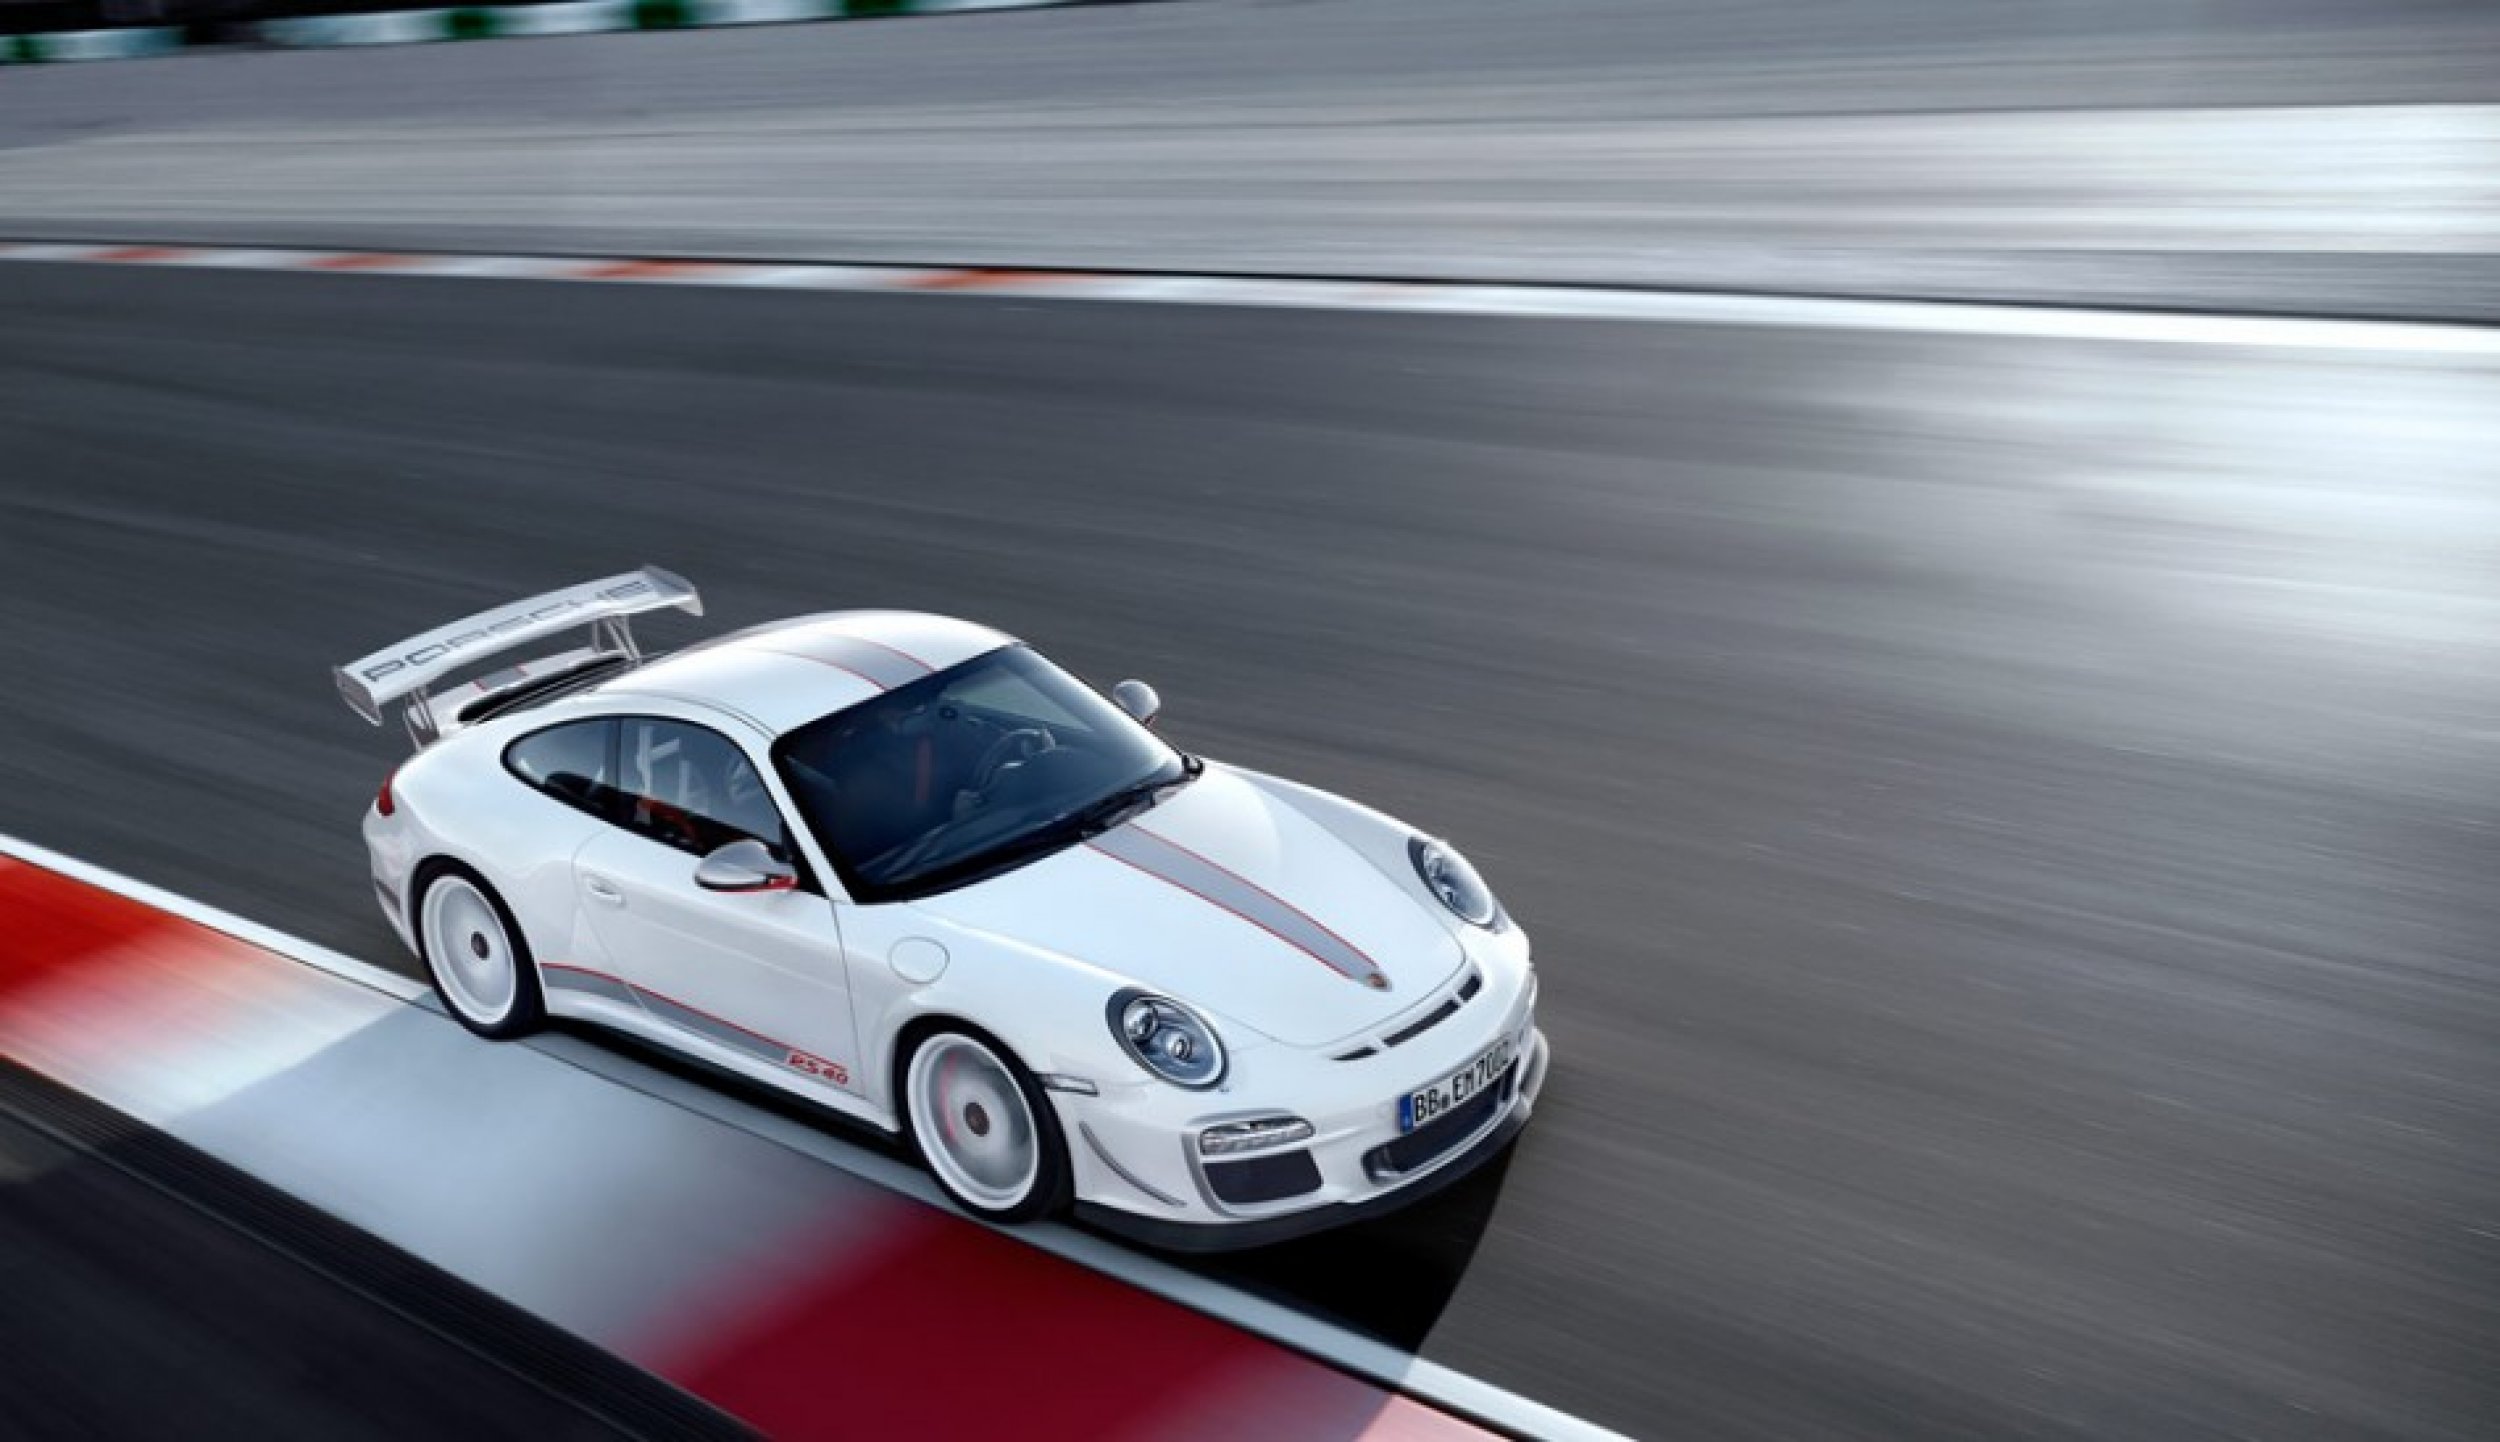 Inside the Porsche 911 GT3